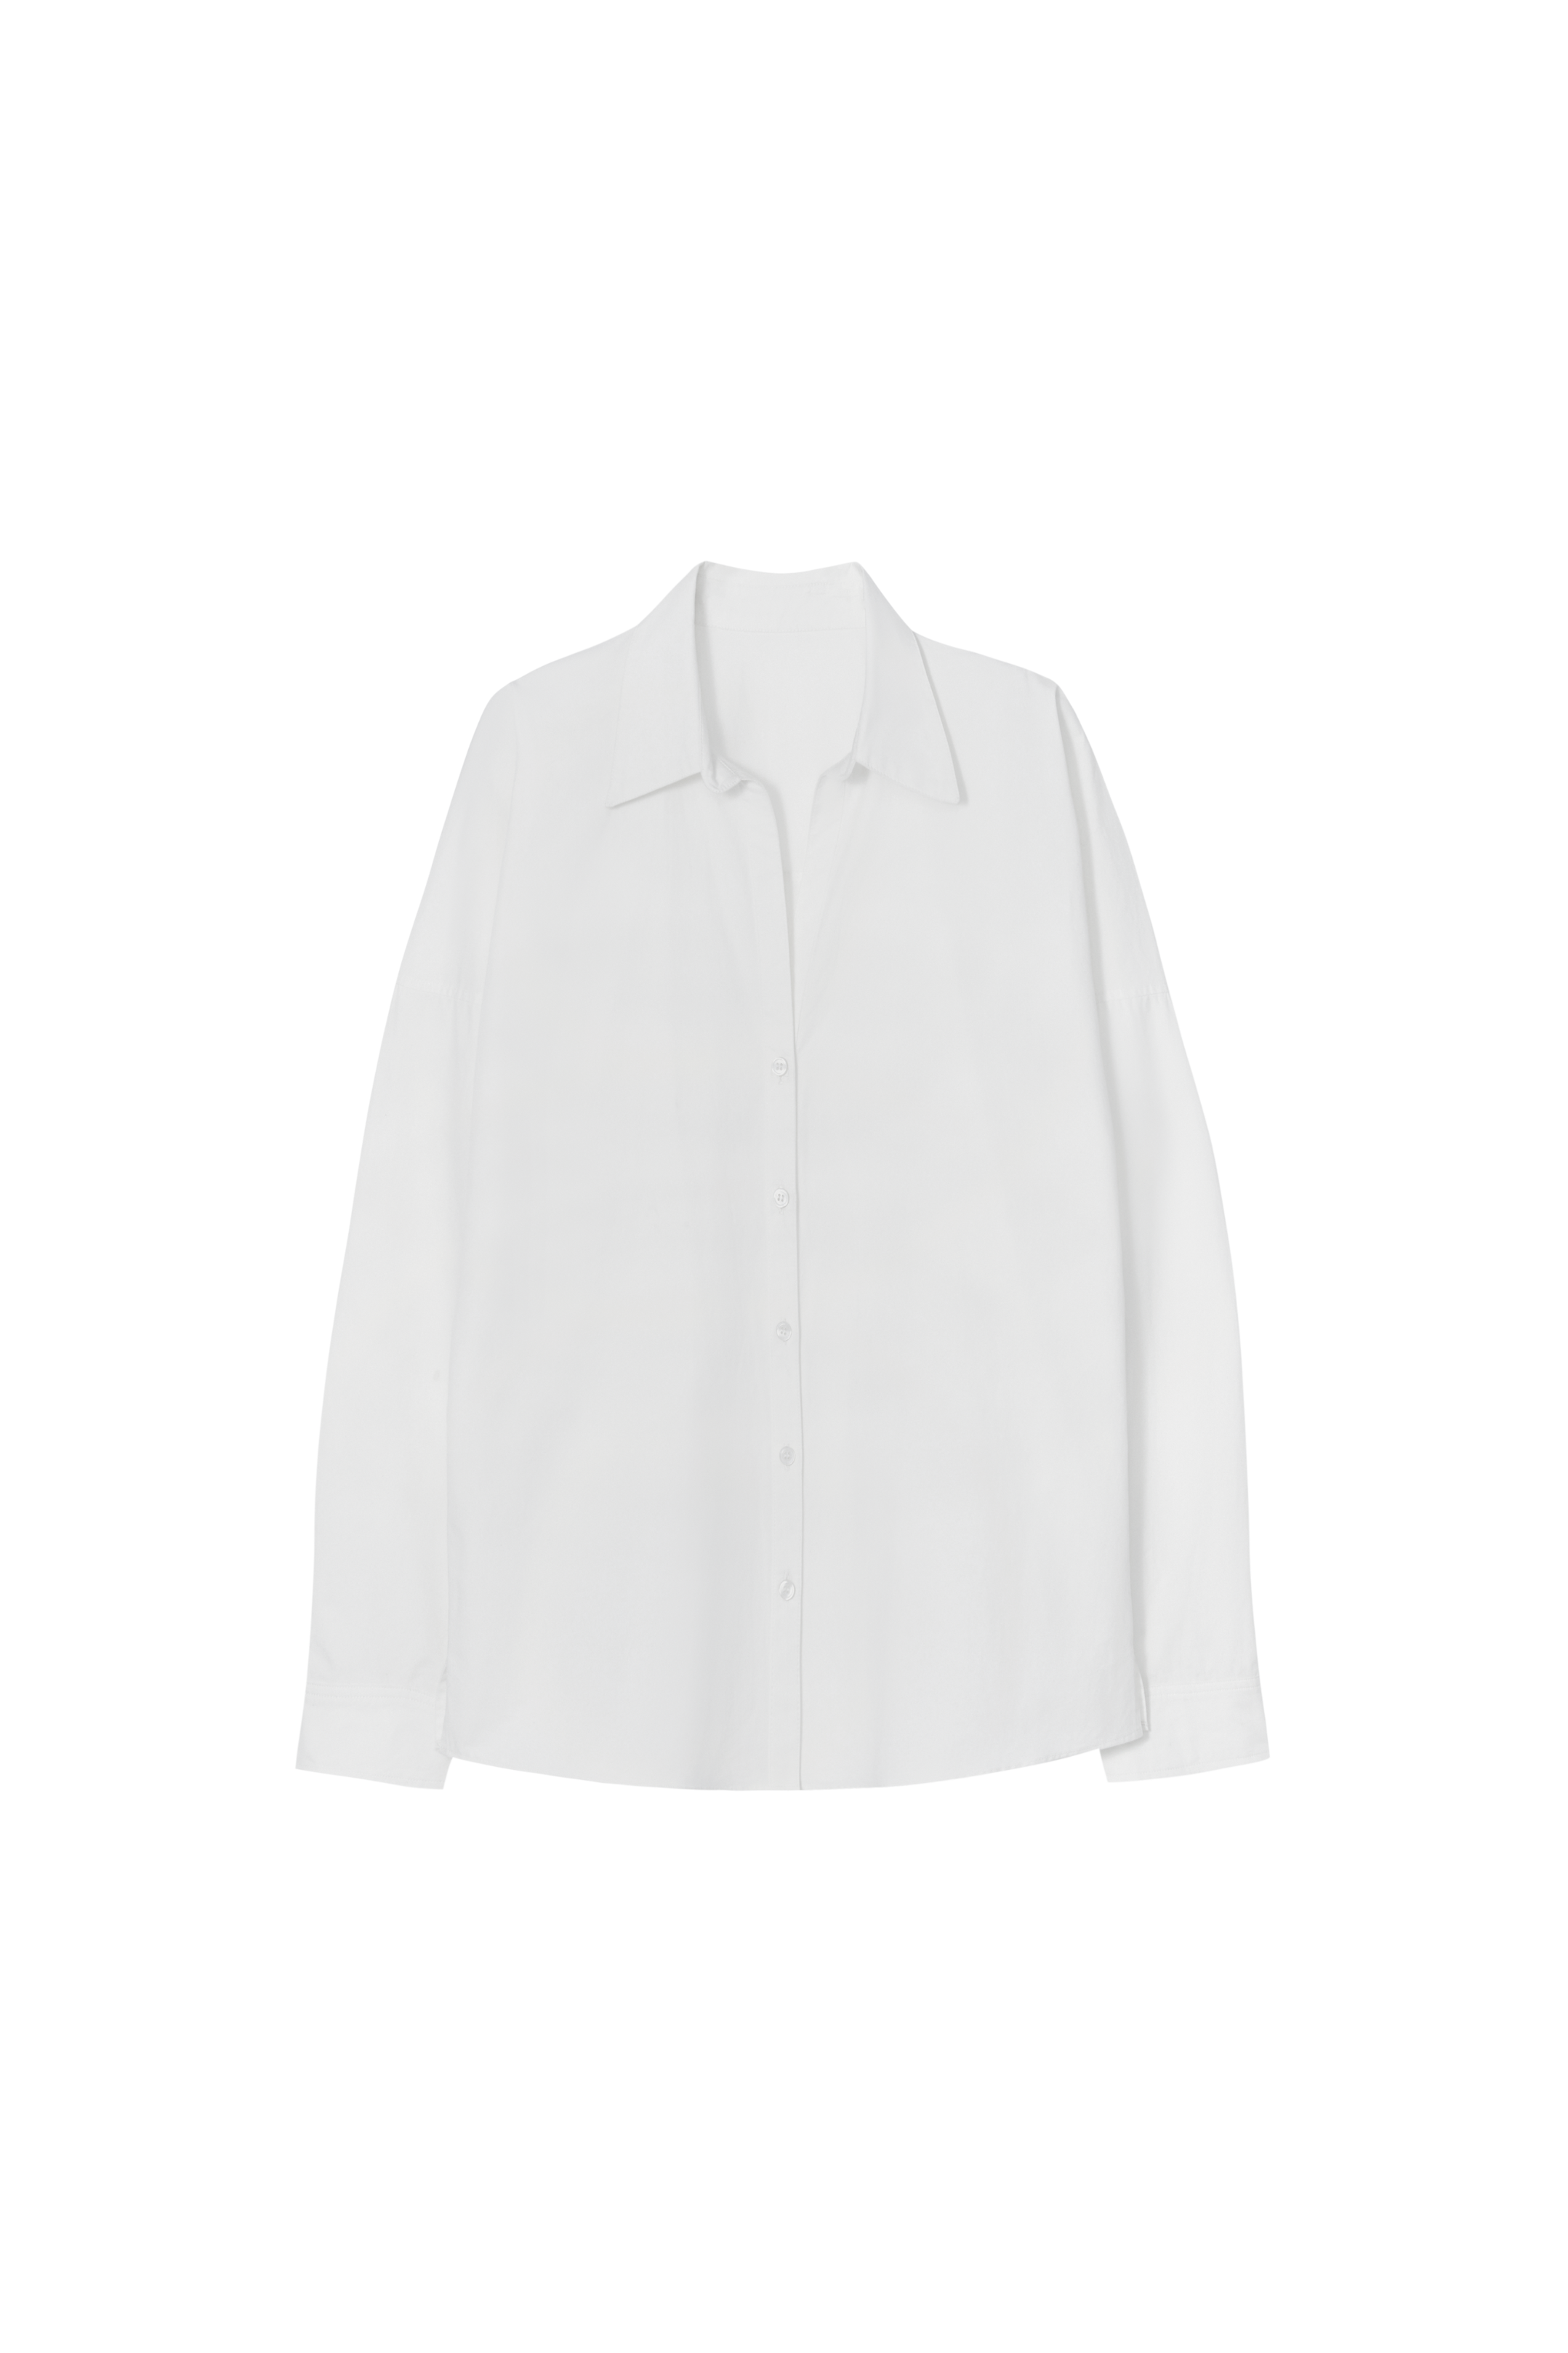 V CHEST COOL WHITE SHIRT / Vチェストクールホワイトシャツ